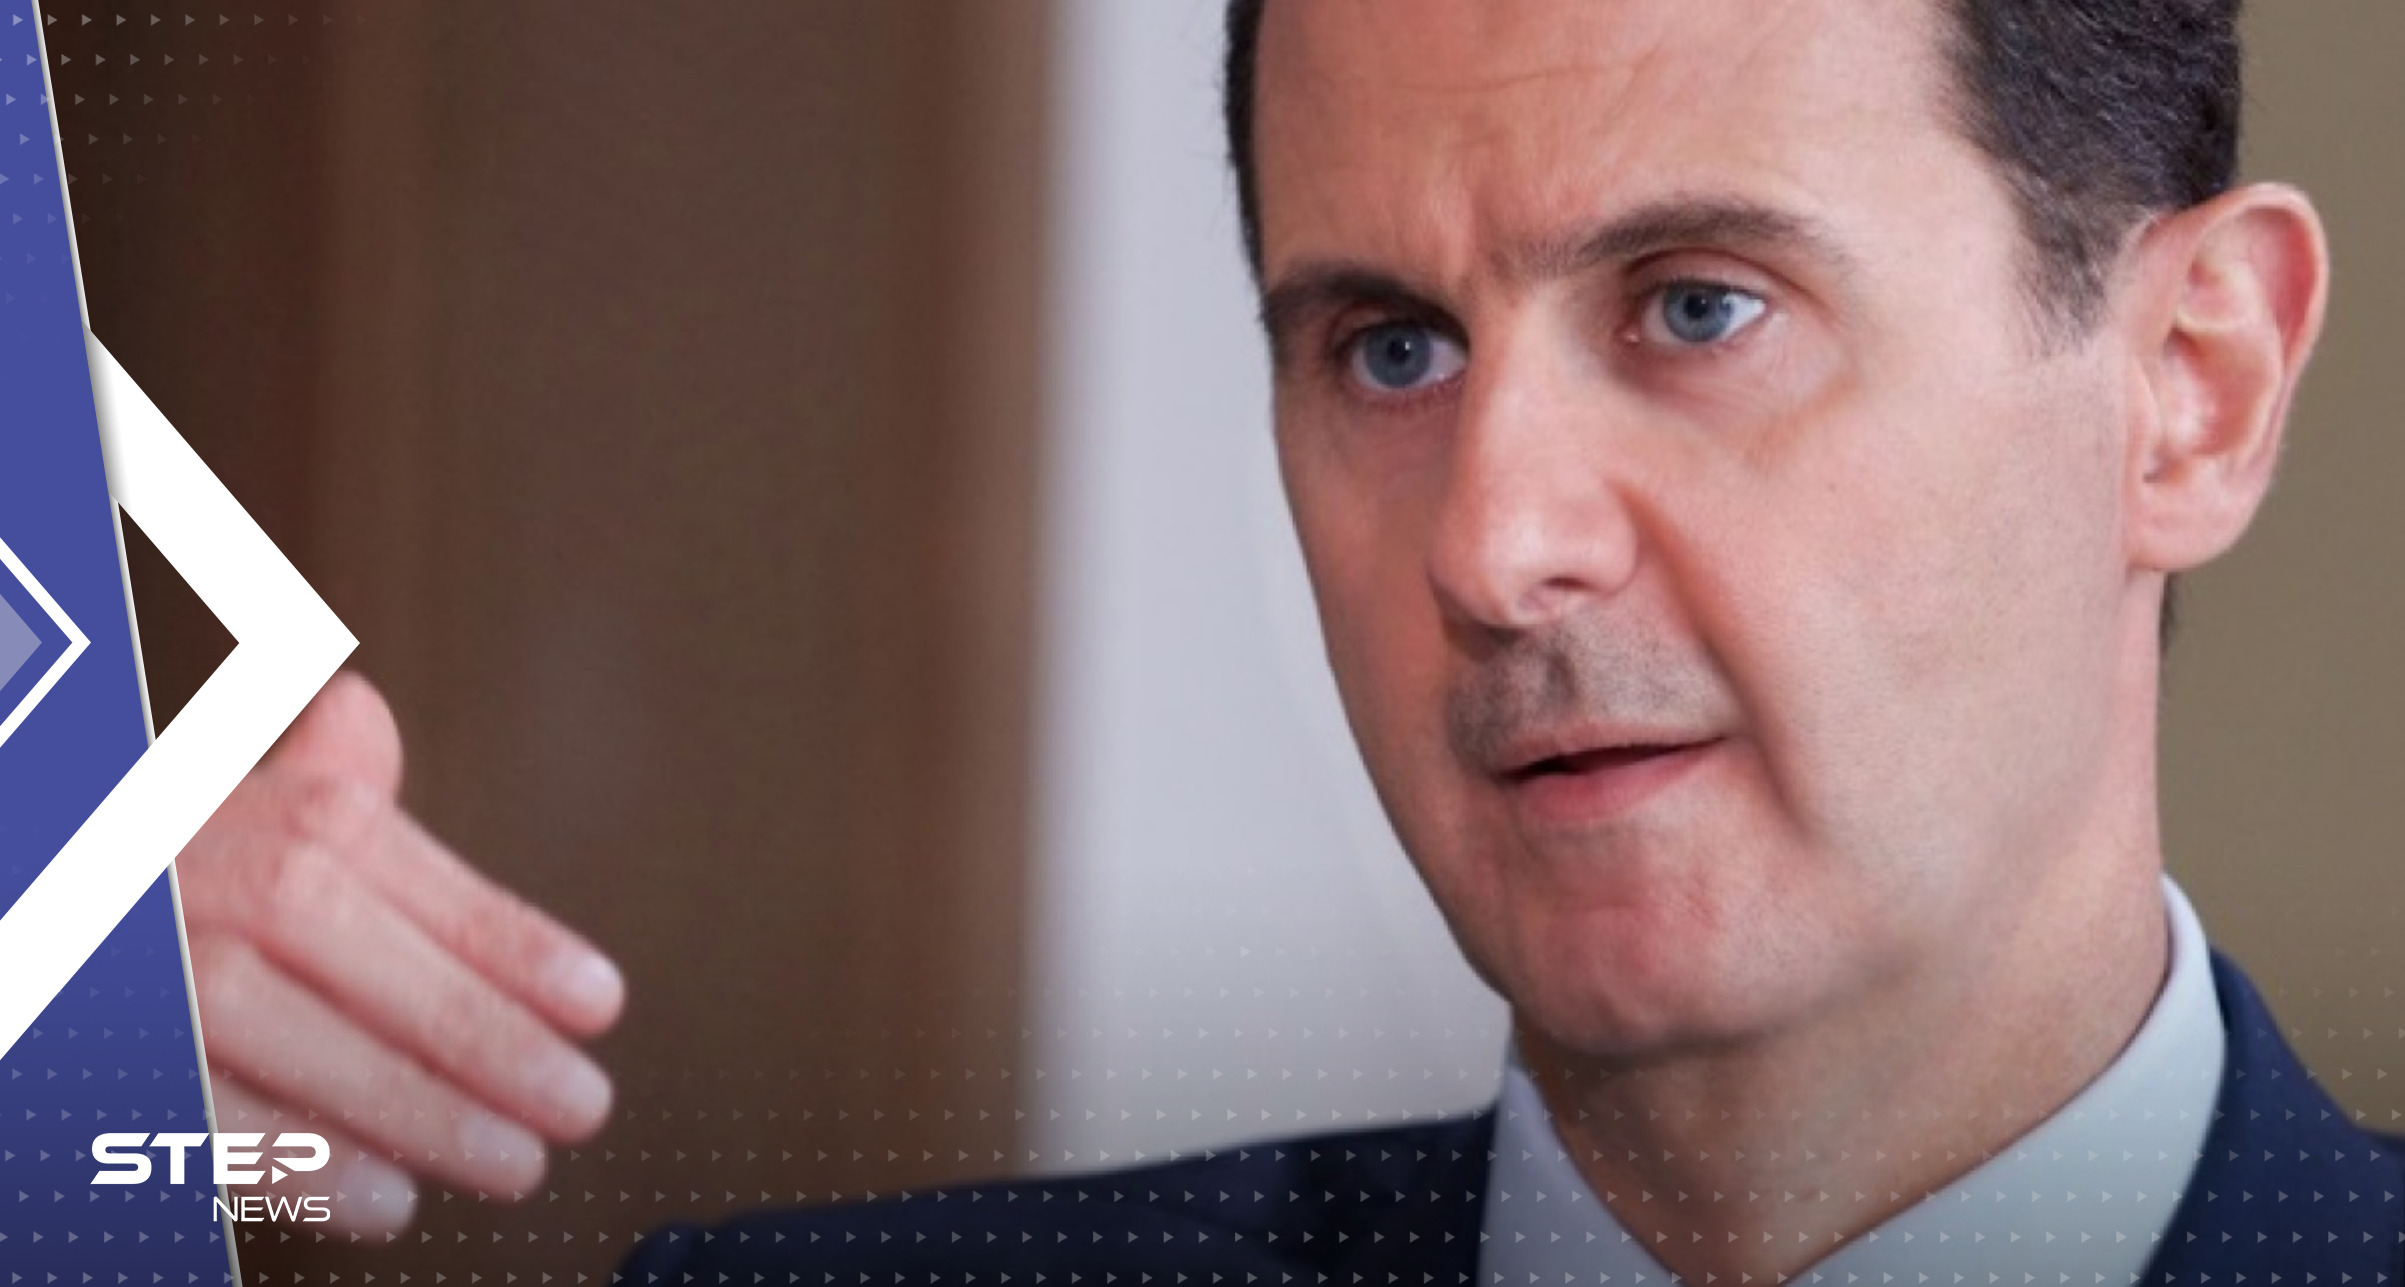 "معلومات مسربة" حول زيارة متوقعة لبشار الأسد إلى دولتين عربيتين